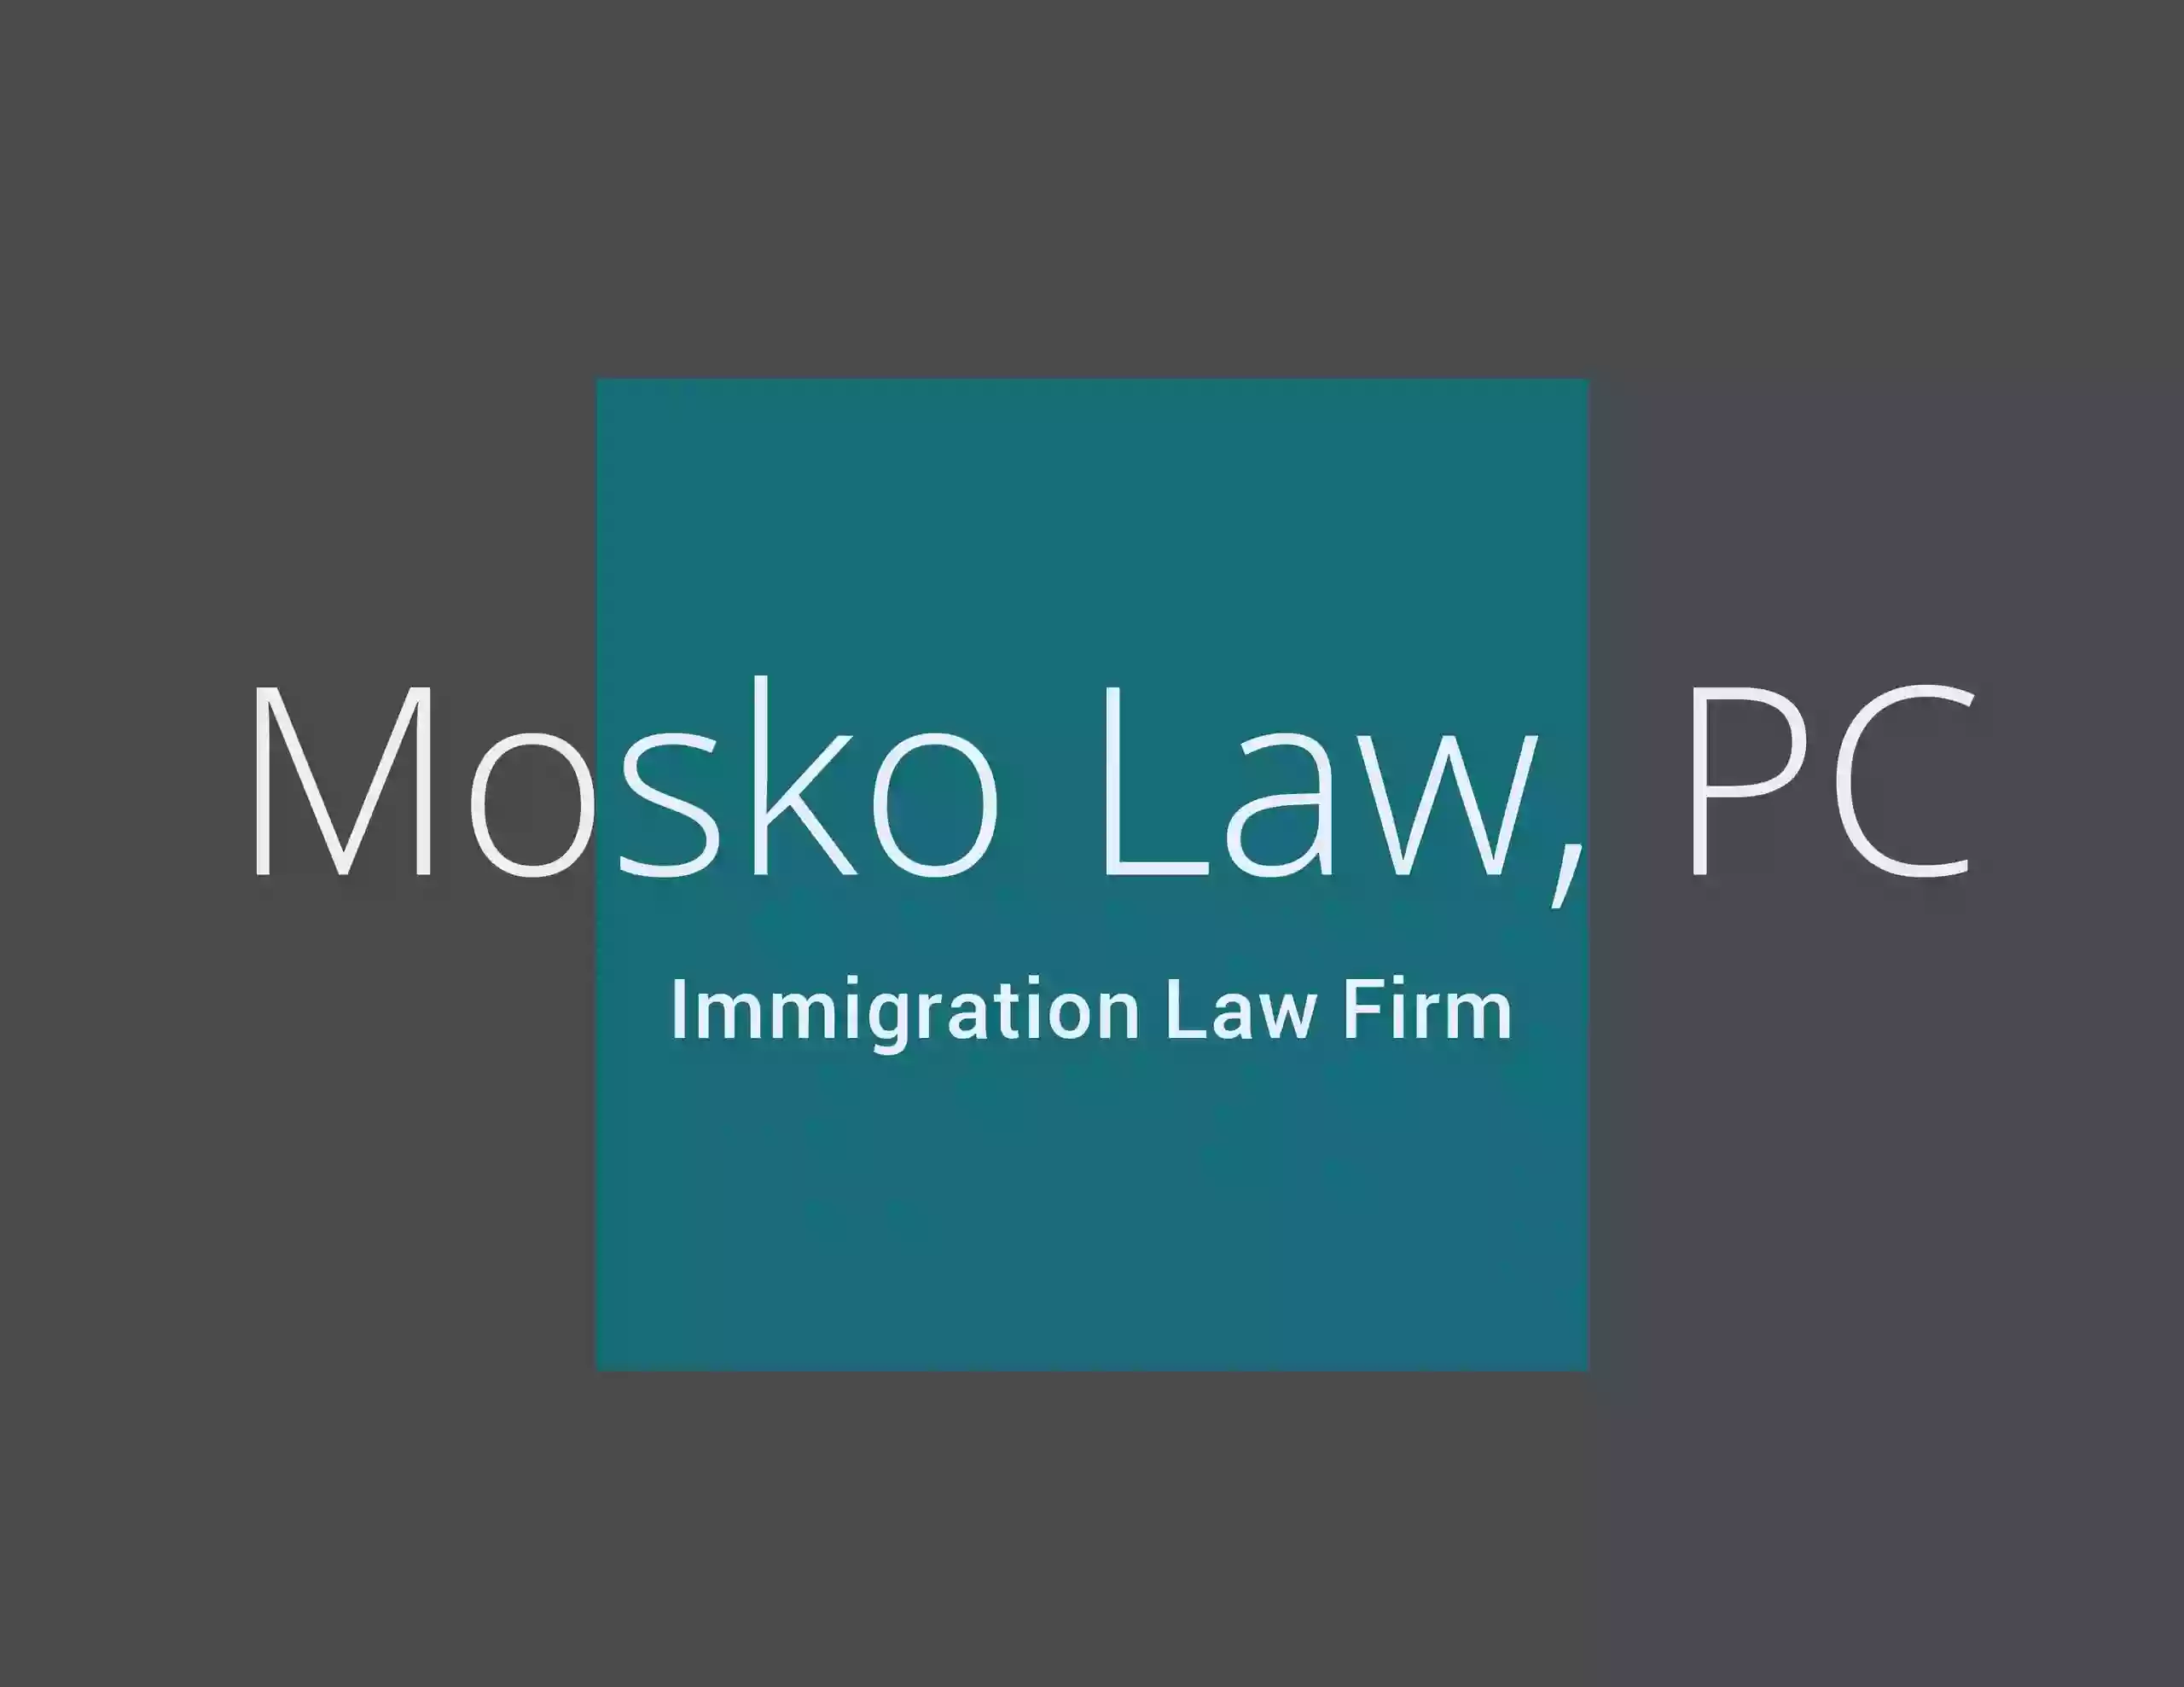 Mosko Law PC